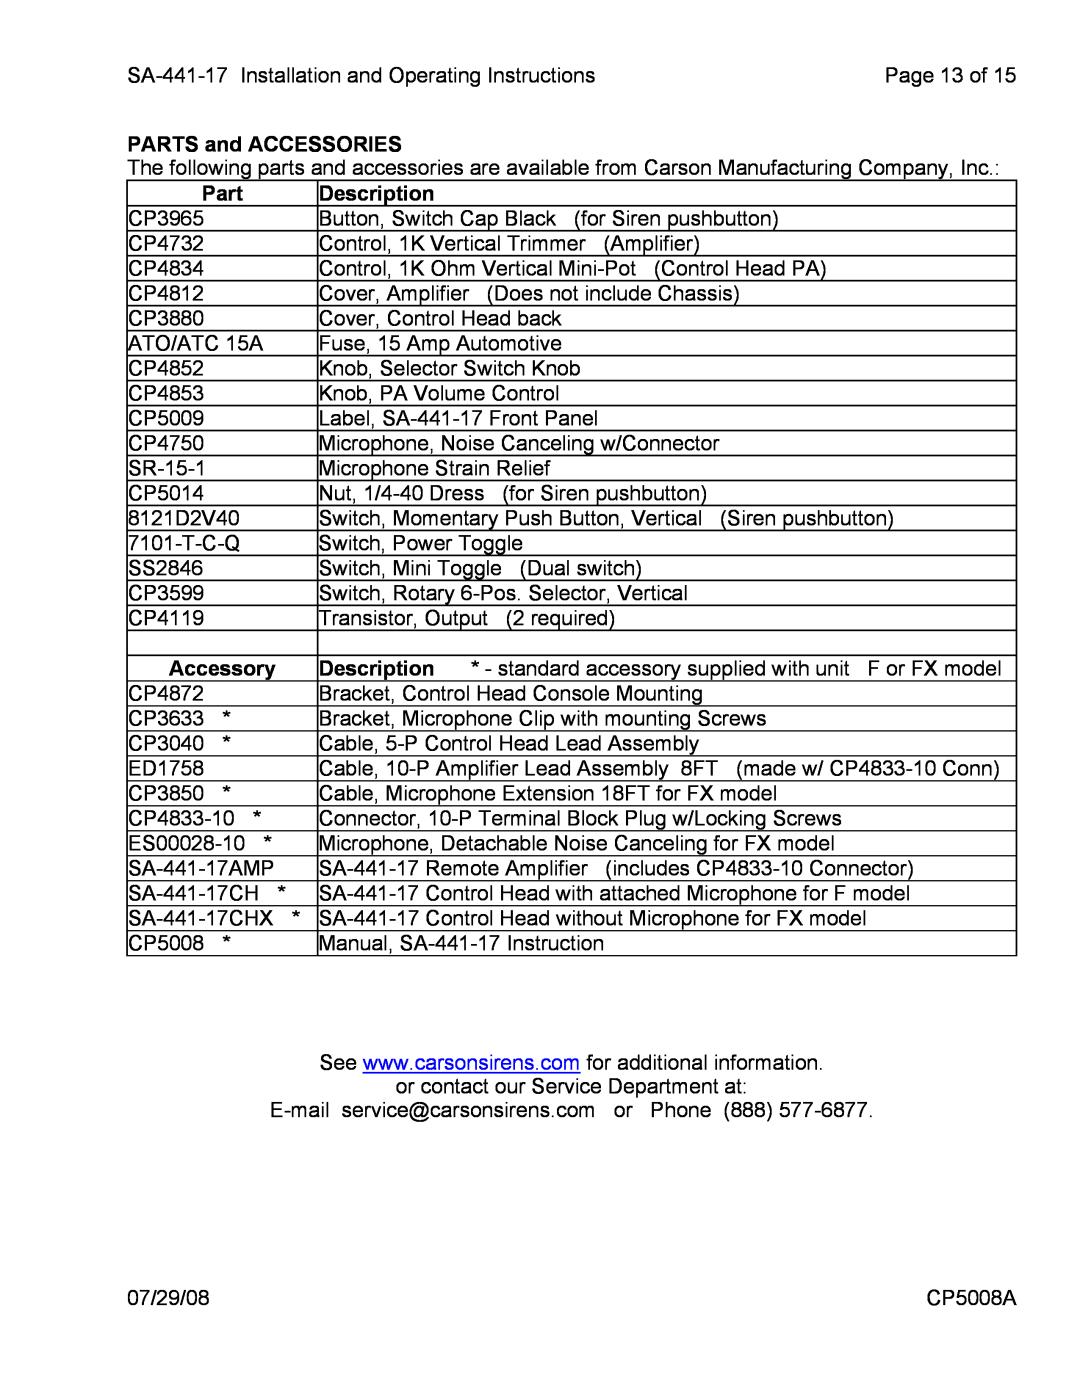 Carson SA-441-17 manual PARTS and ACCESSORIES, Part, Description, Accessory 